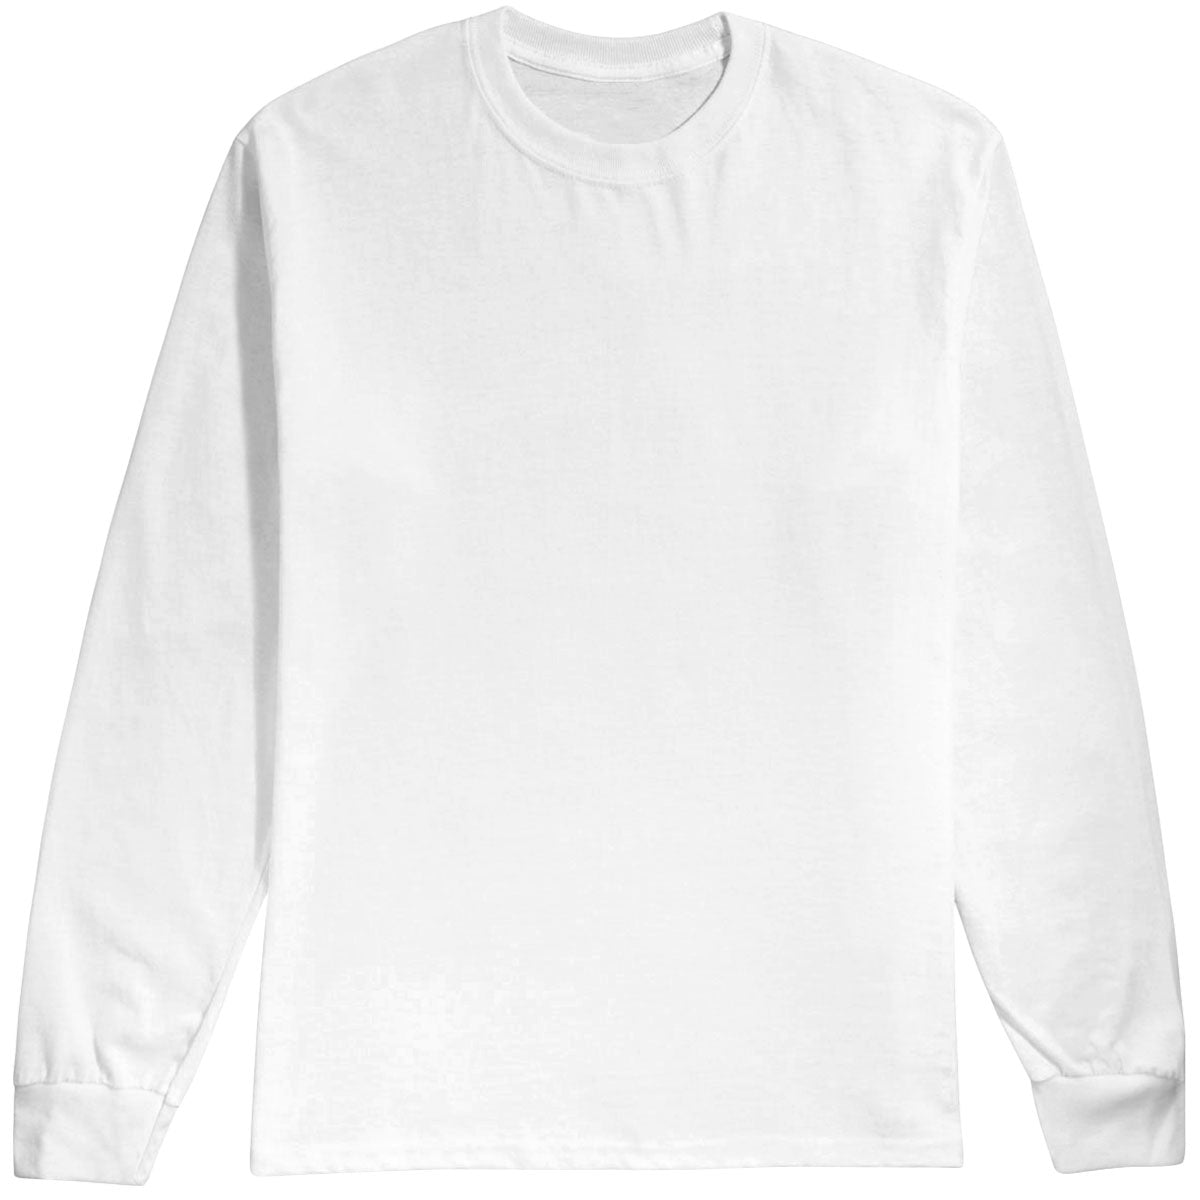 Habitat Crest Long Sleeve T-Shirt - White - LG image 1